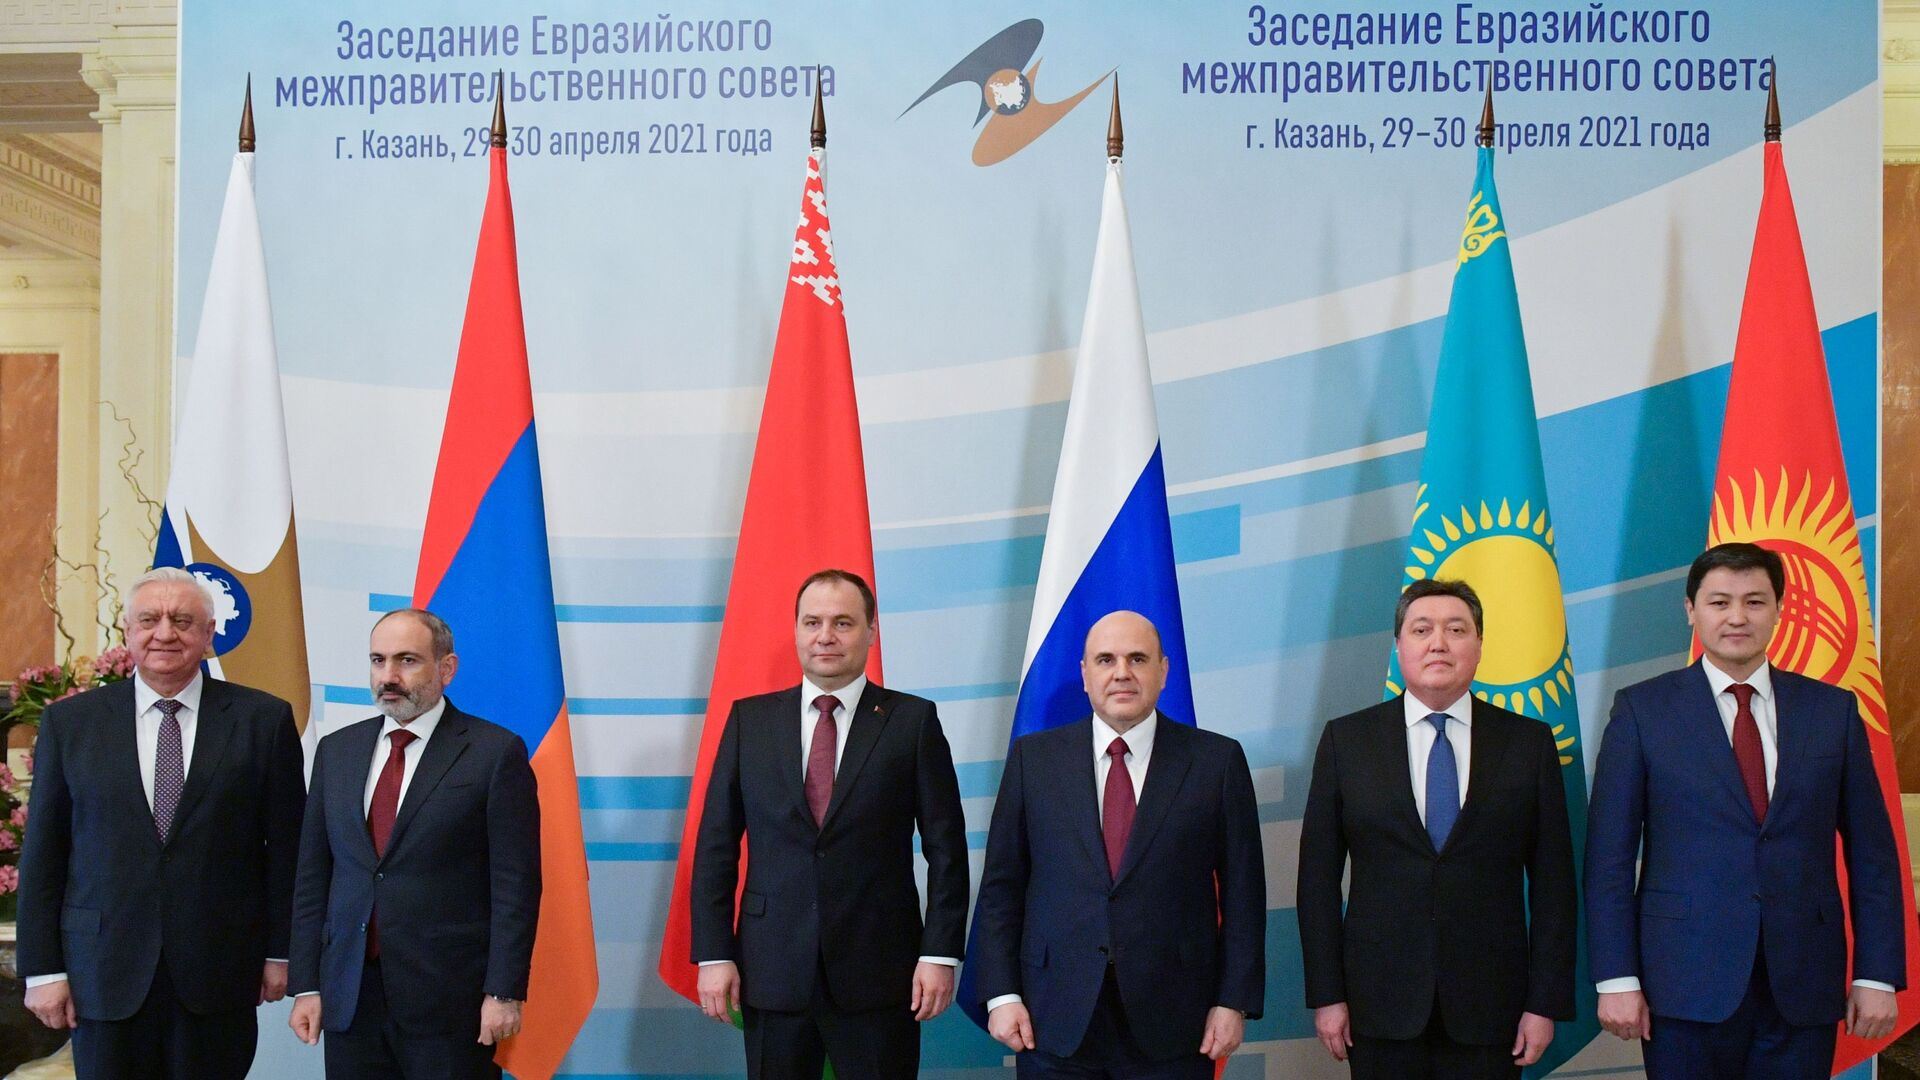 انطلاق اجتماع قادة الاتحاد الأوراسي في موسكو
